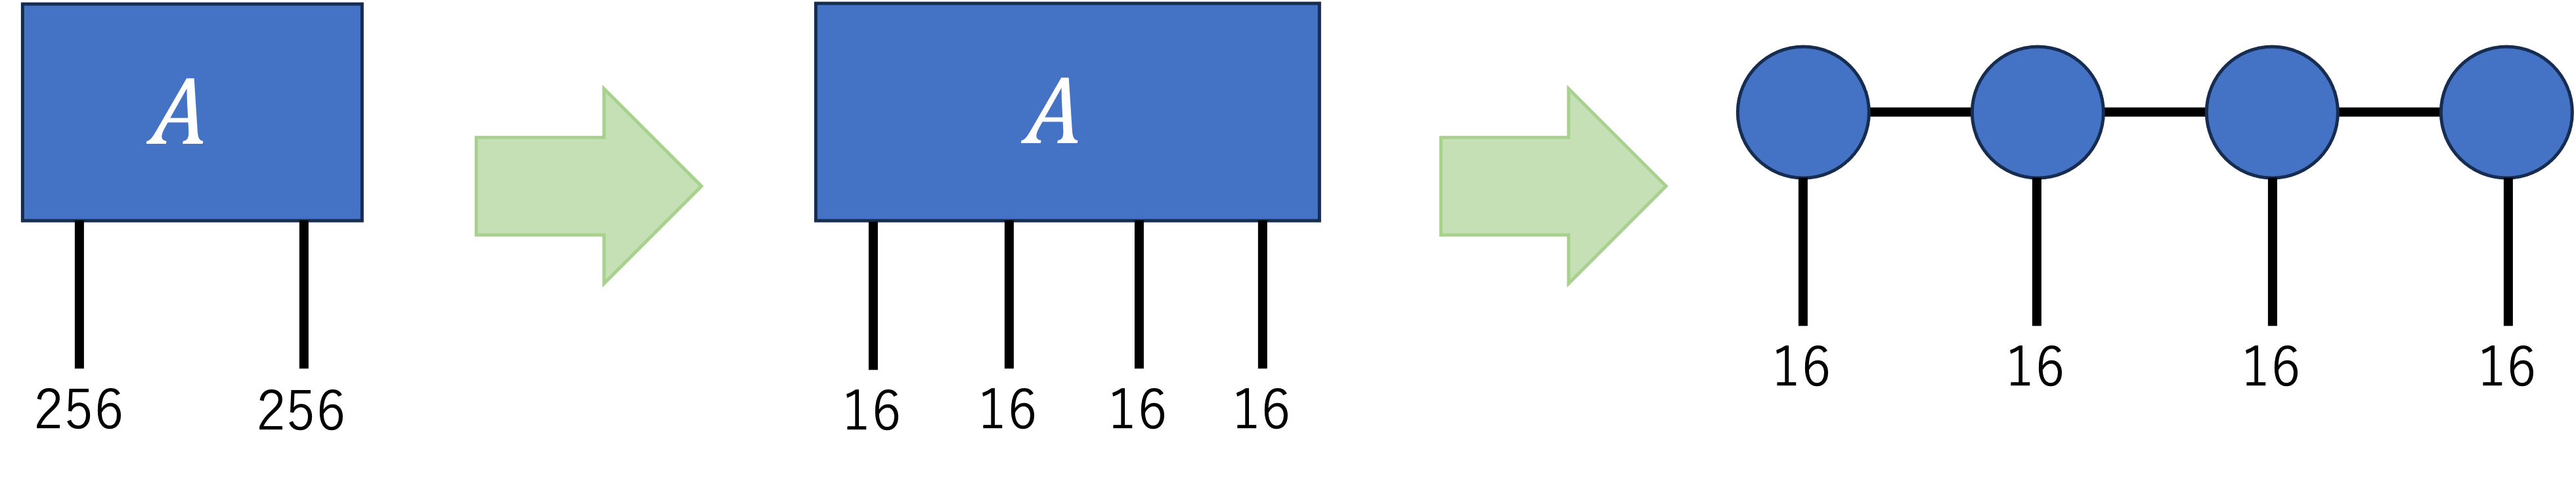 行列積状態への変換のイメージ図